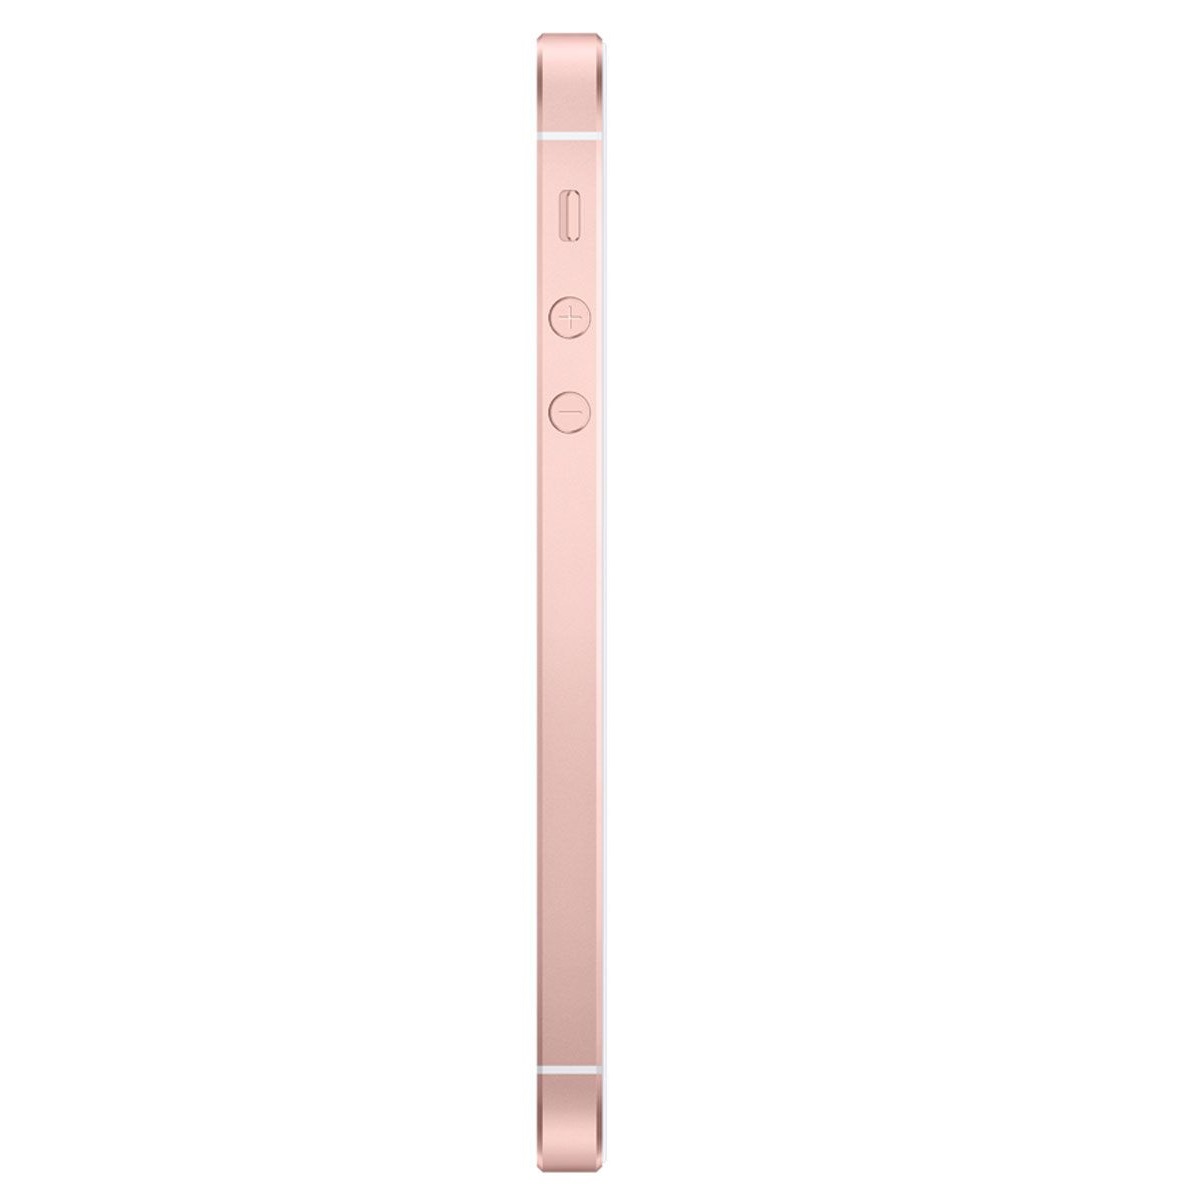 Смартфон Apple iPhone SE 128Gb Rose Gold (A1723)